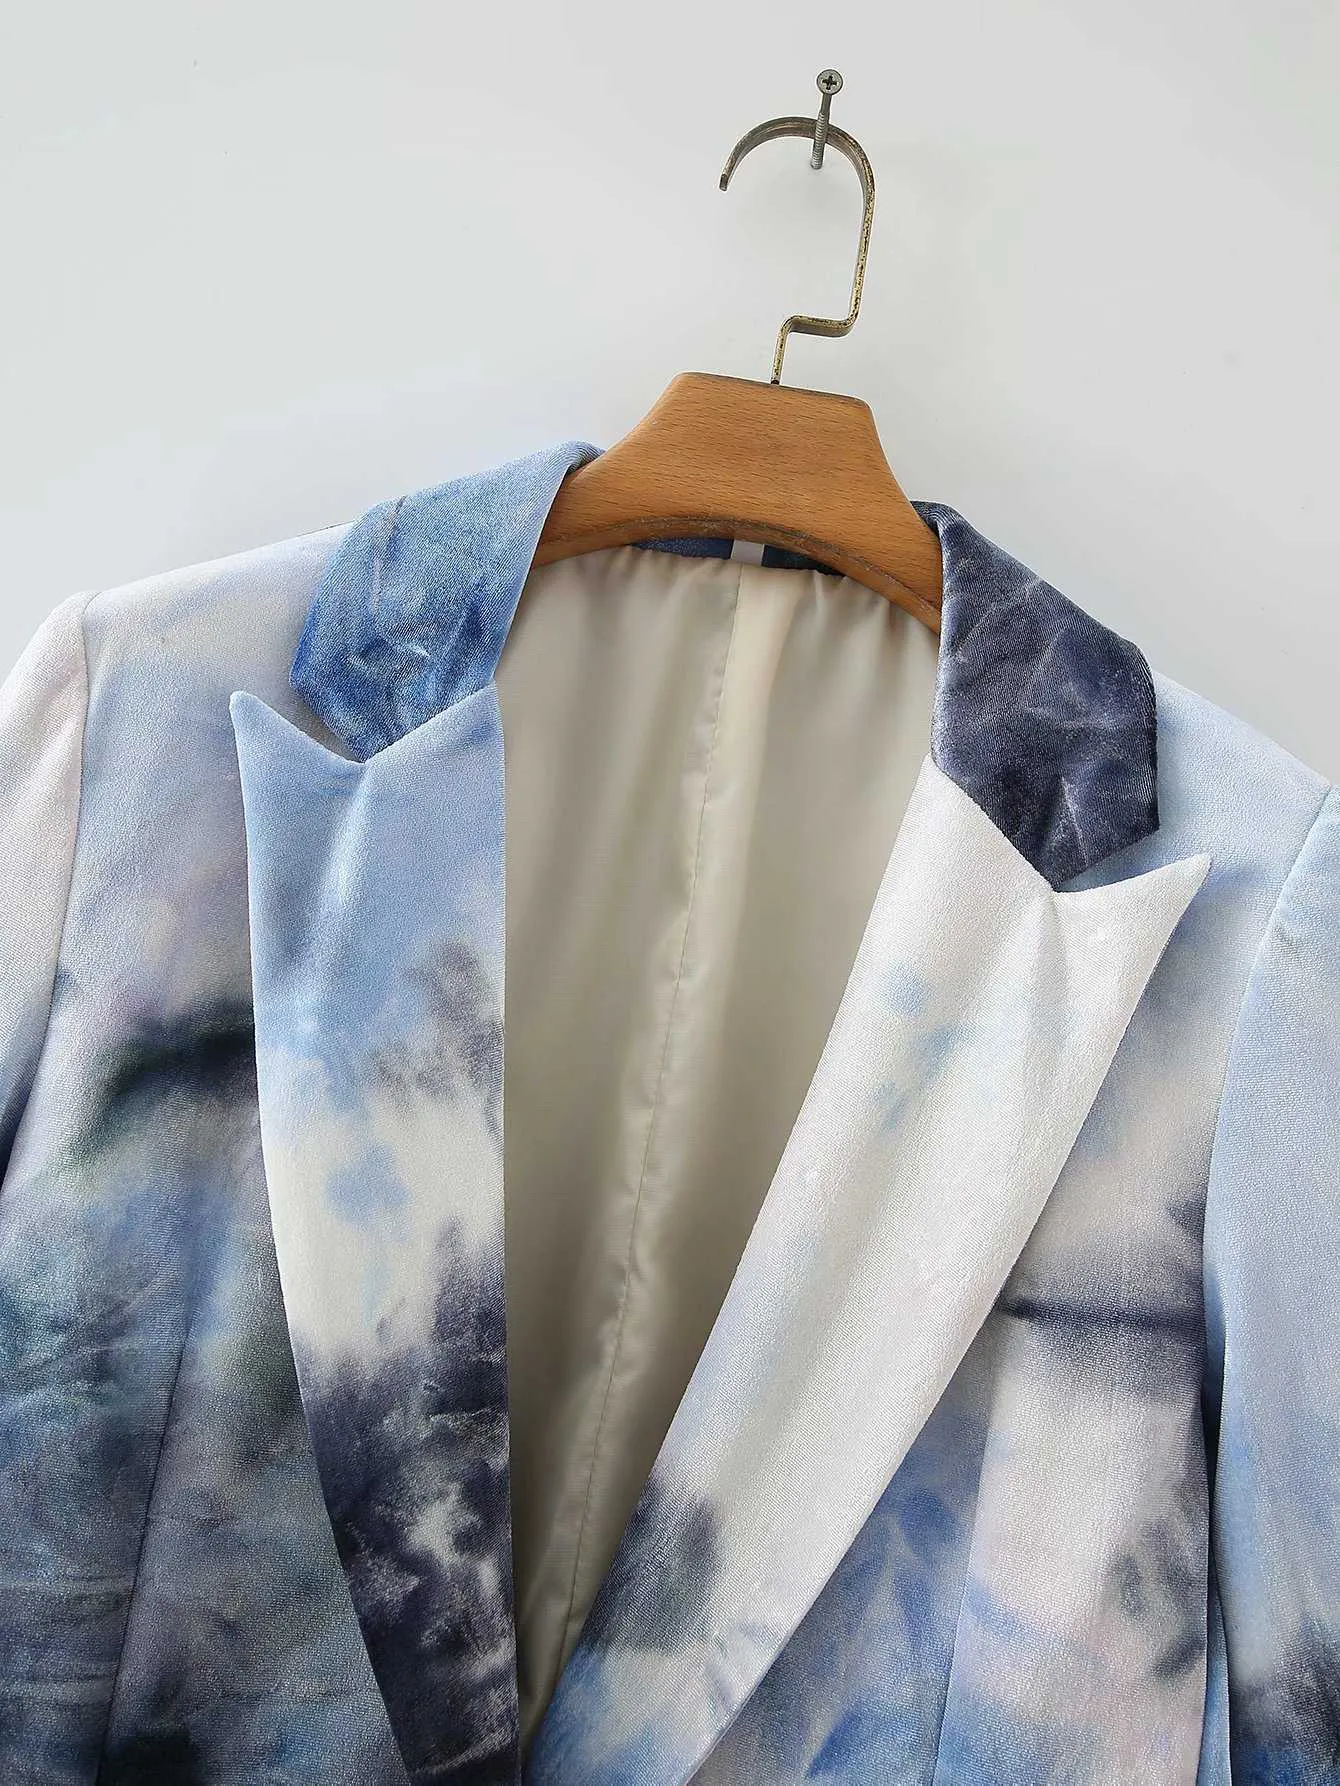 [티쉬] 봄 가을 패션 코트 긴 소매 넥타이 염료 단일 버튼 V 넥 기질 여성 블레이저 13U917 210527